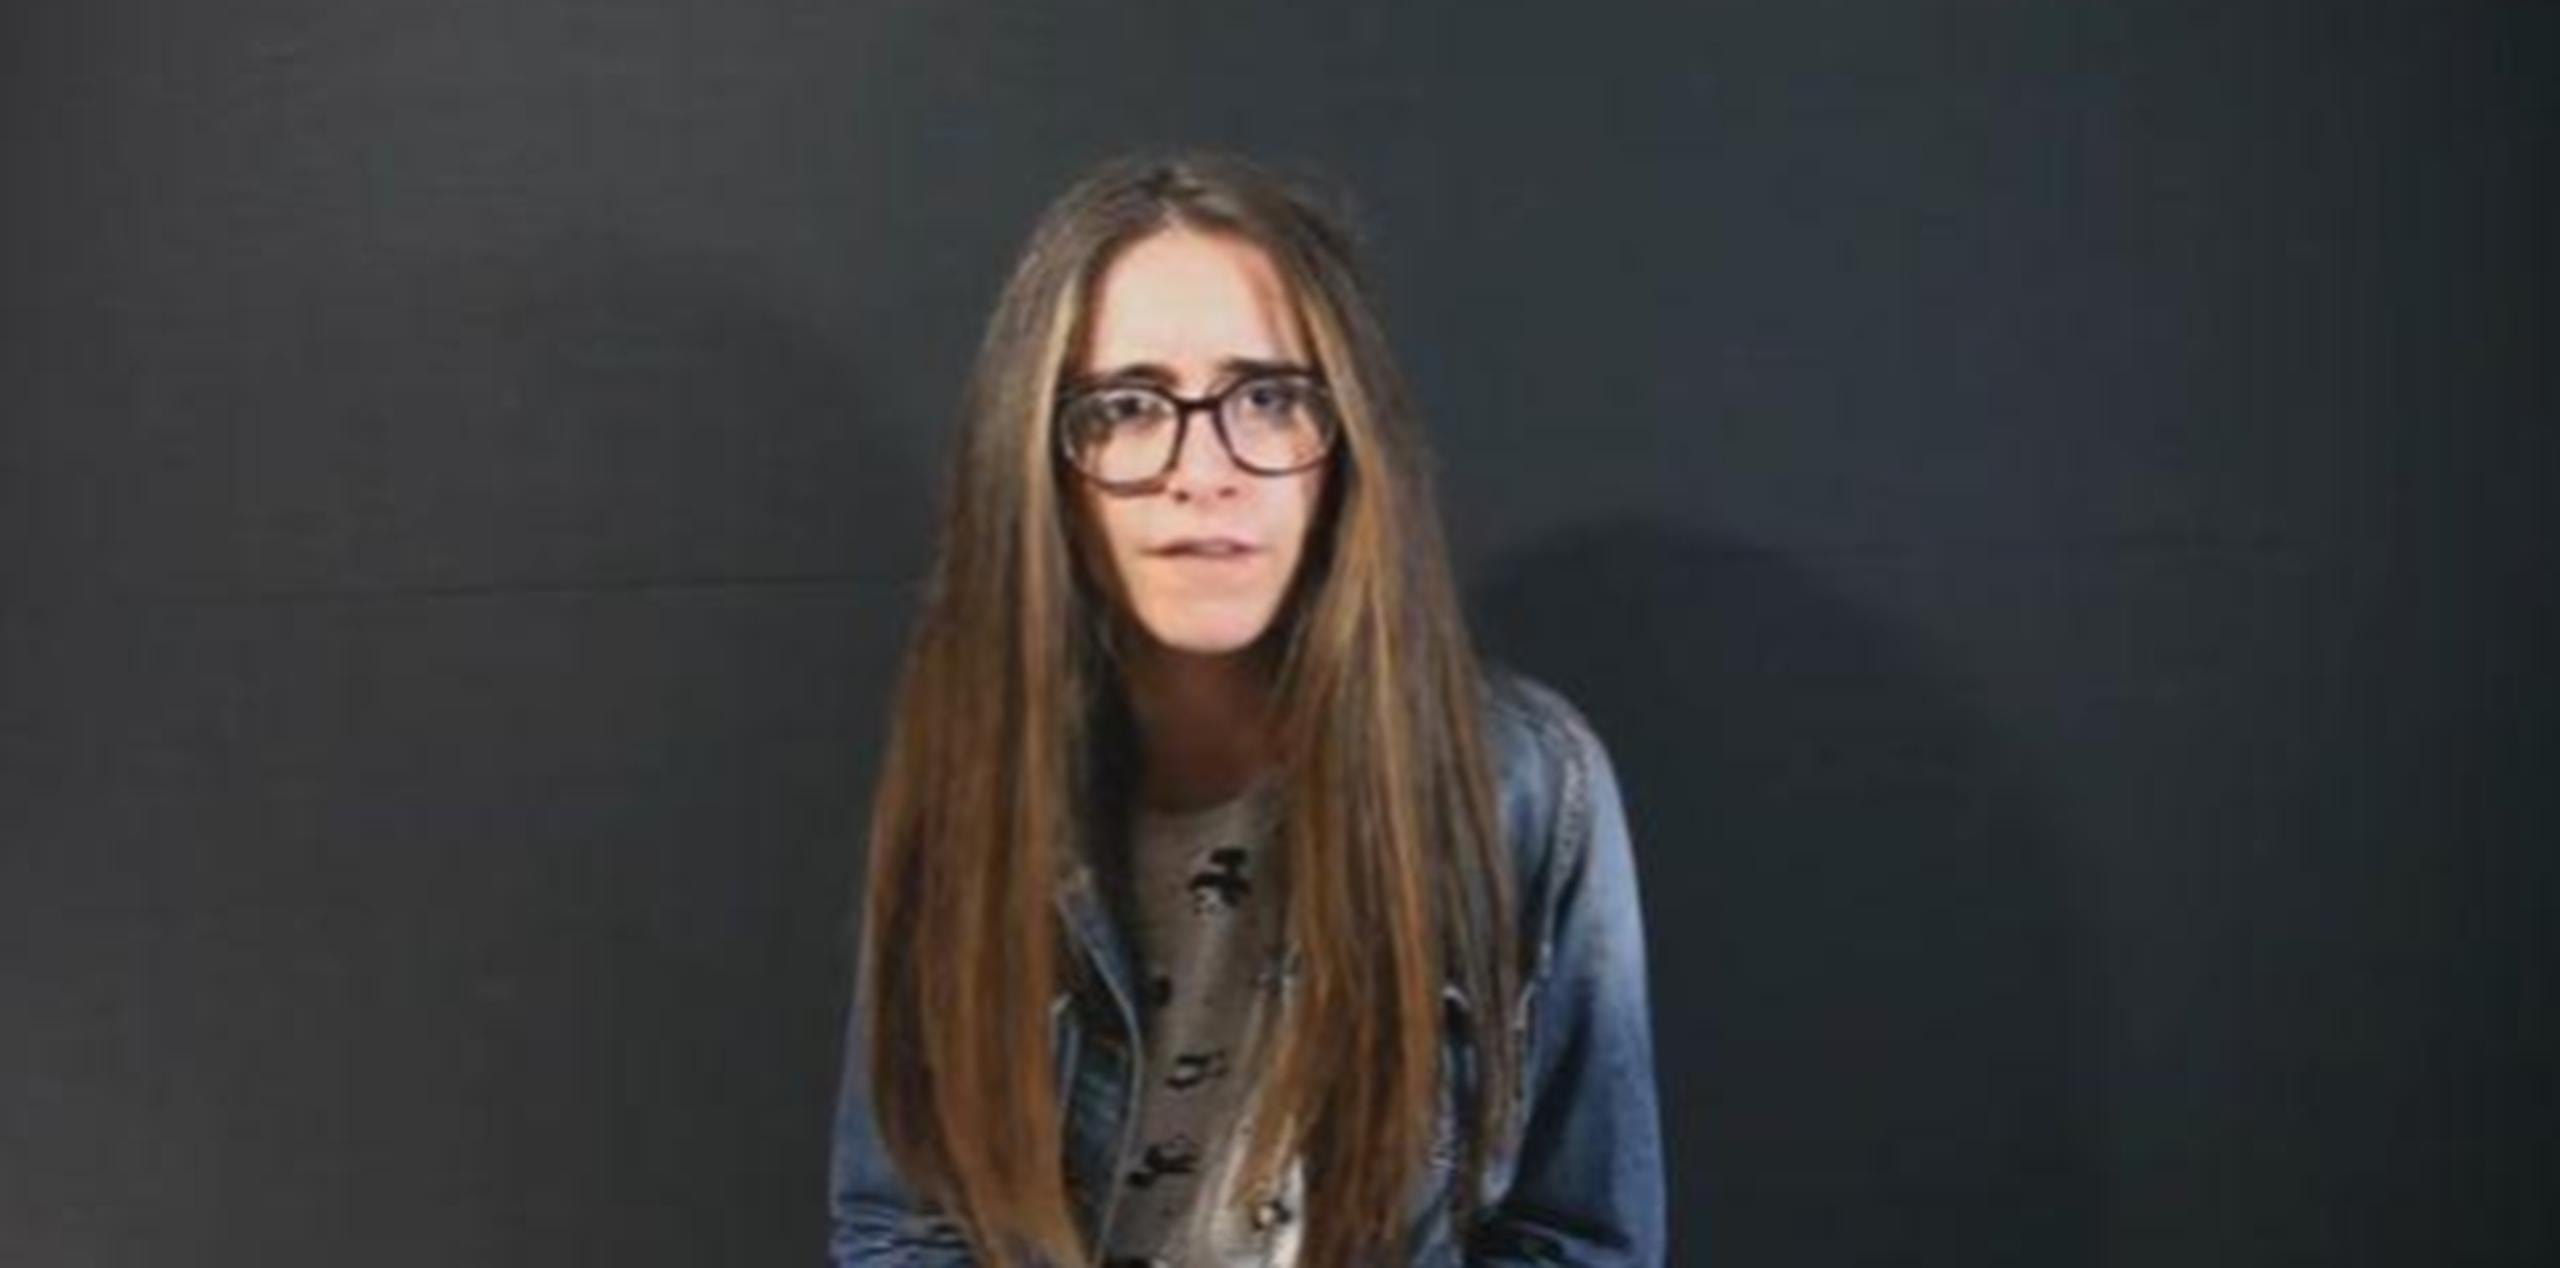 Ella es Alicia Ródenas, una joven de 17 años que realizó una interpretación de un texto de forma teatral para hablar sobre el machismo. (Captura)